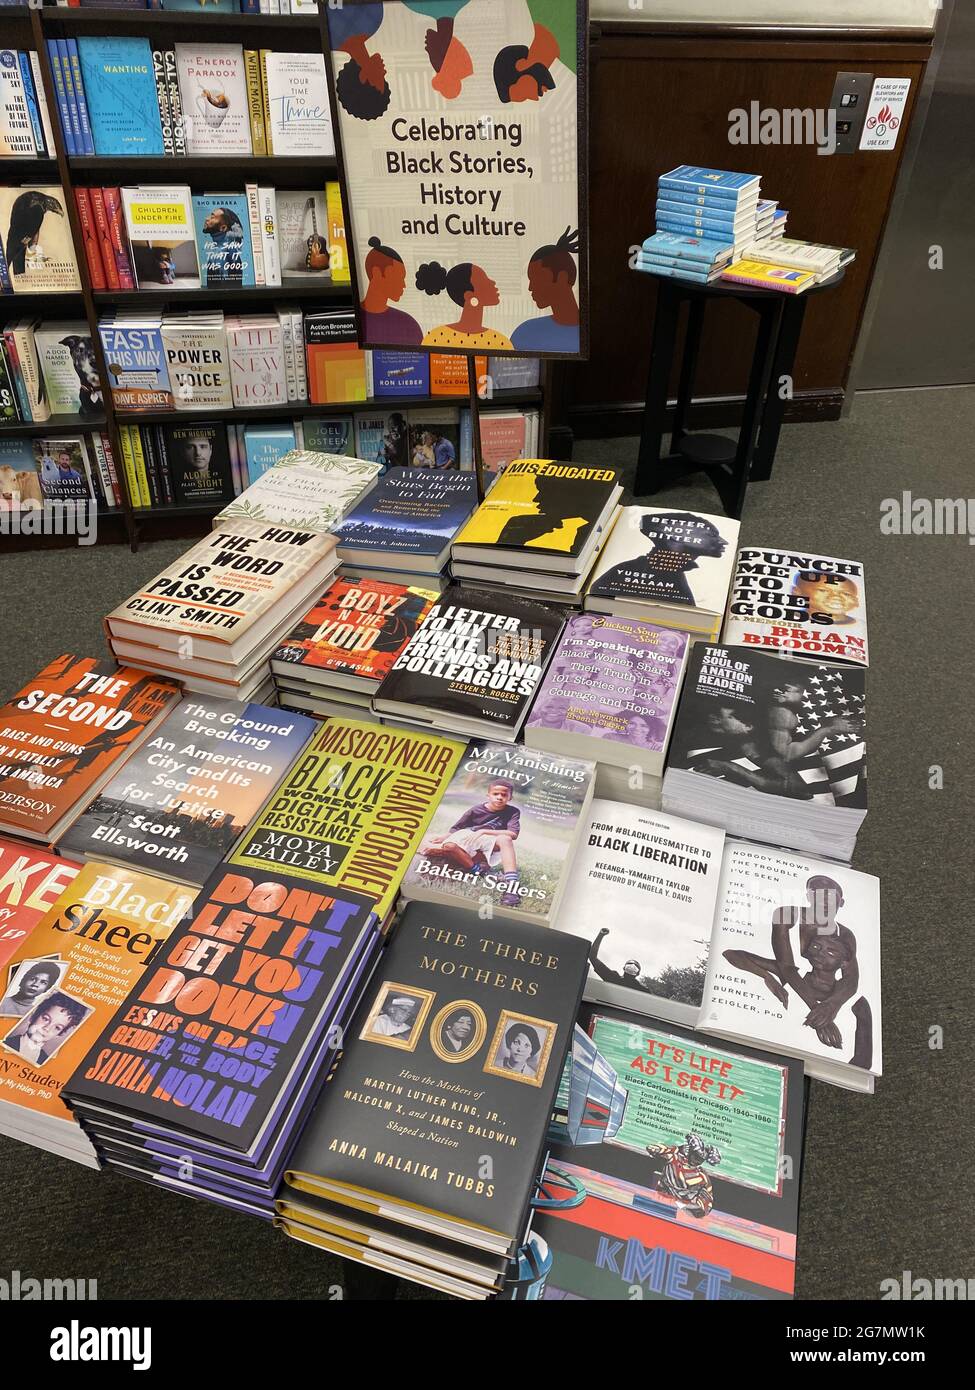 Exposición de libros a la venta para celebrar la historia y la cultura negra en torno a la fiesta nacional 17 de junio en los Estados Unidos. Librería, Brooklyn, NY. Foto de stock